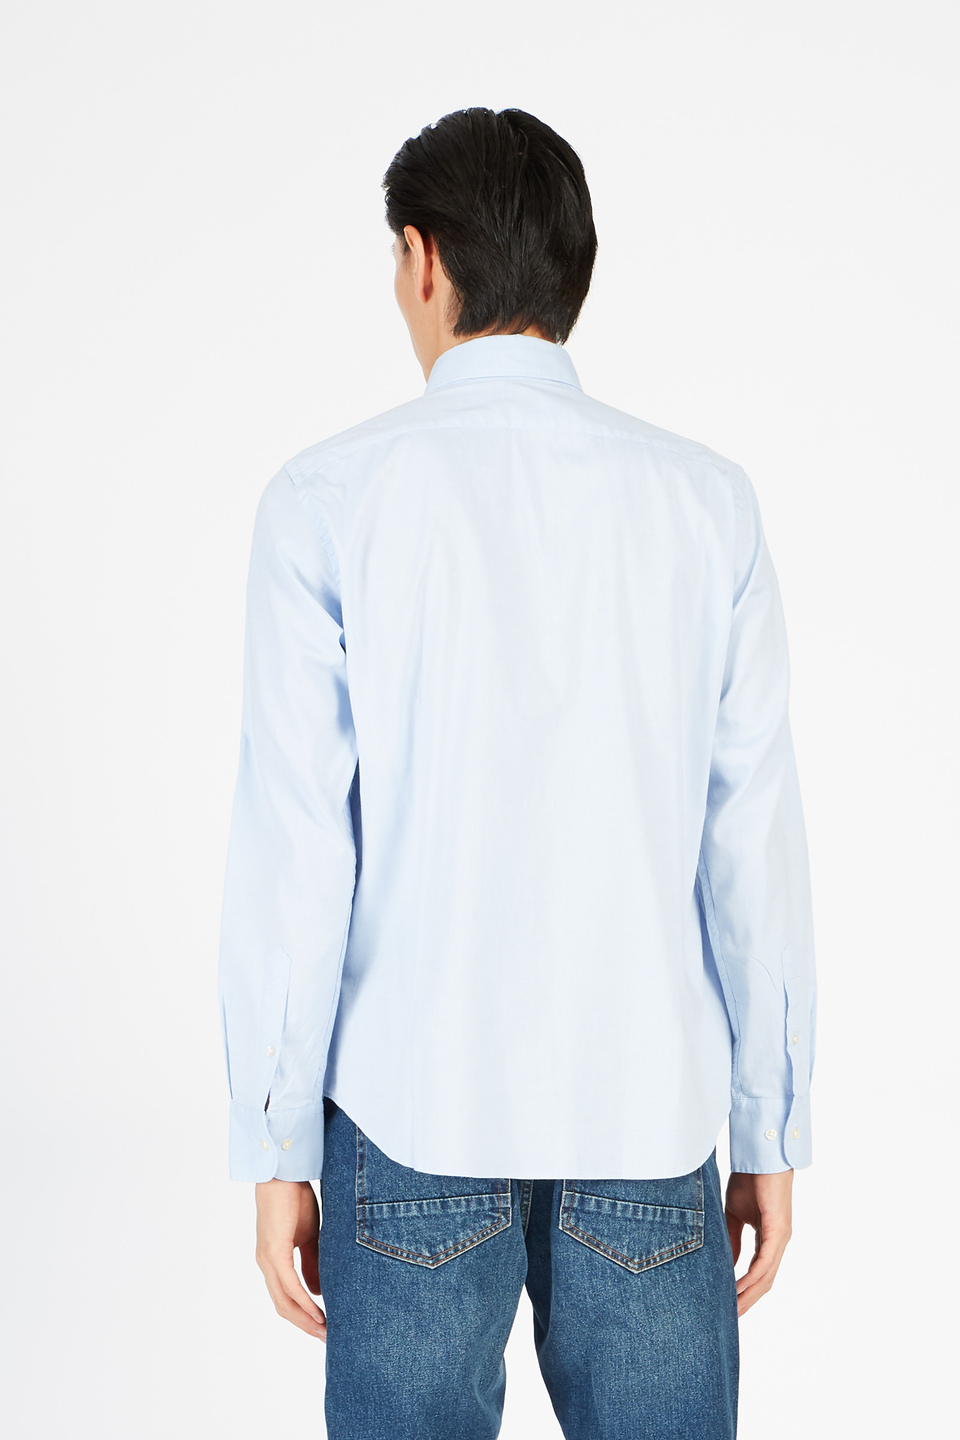 Men's shirt regular fit - La Martina - Official Online Shop